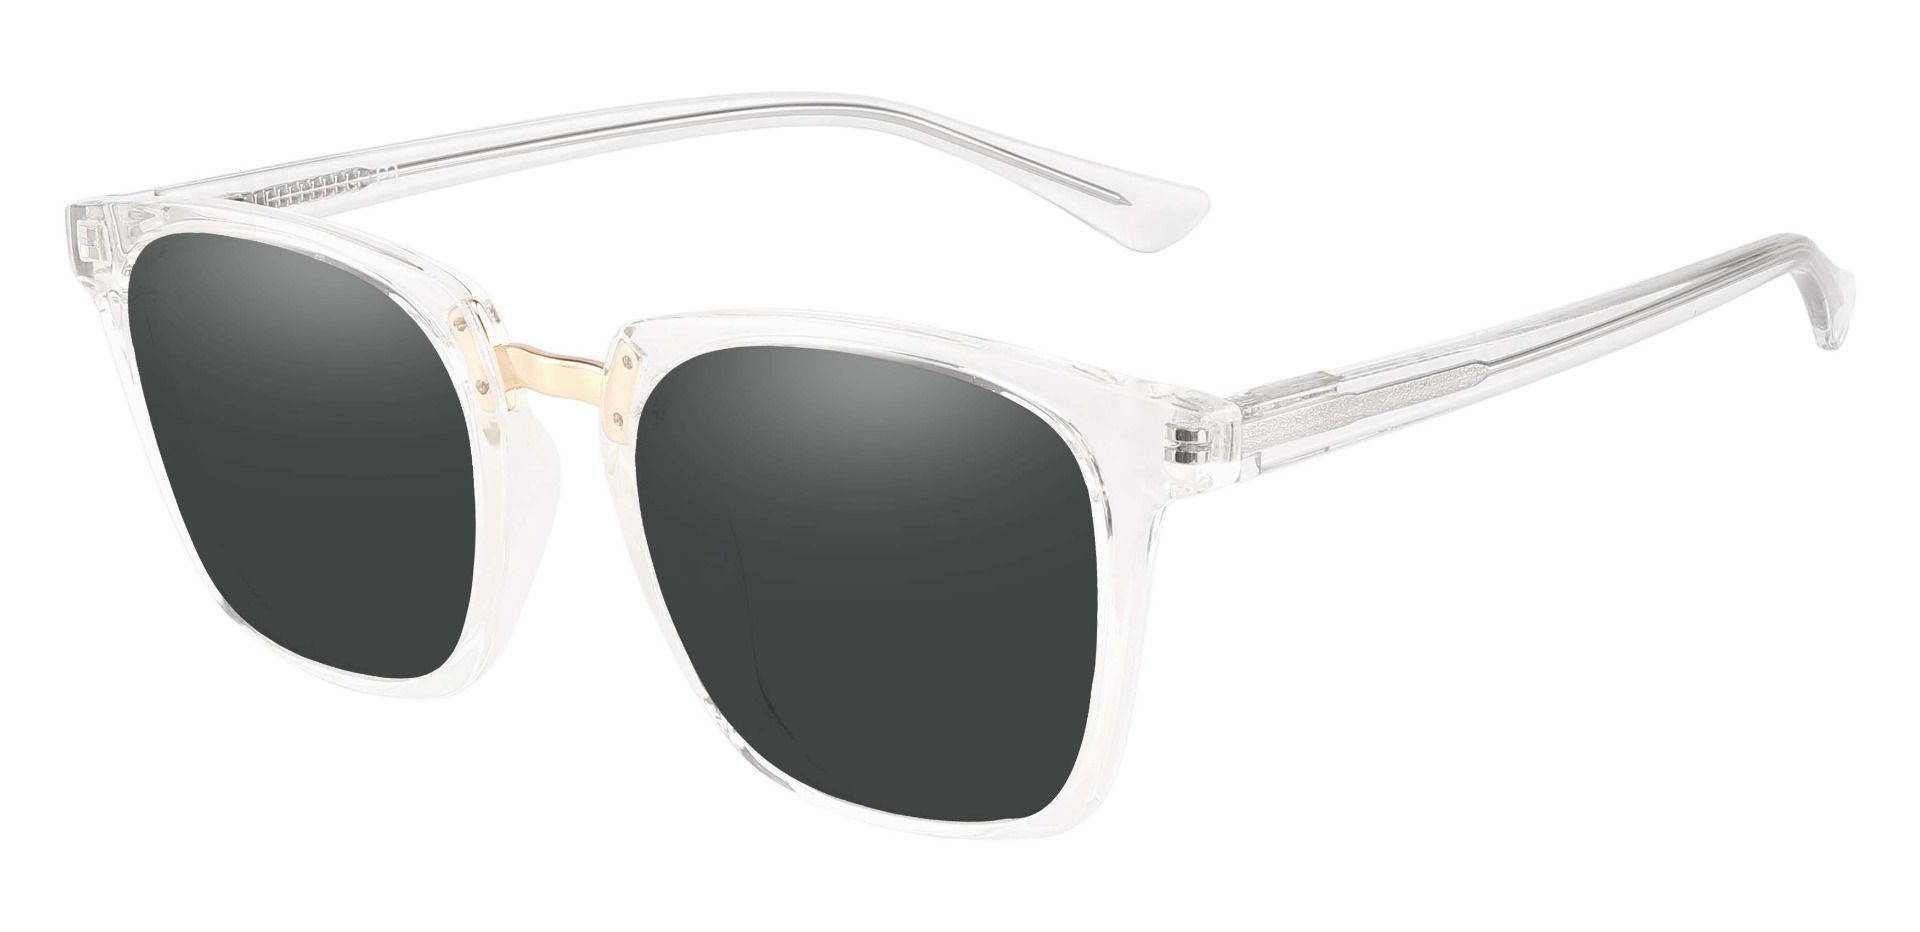 Delta Square Prescription Sunglasses - Clear Frame With Gray Lenses